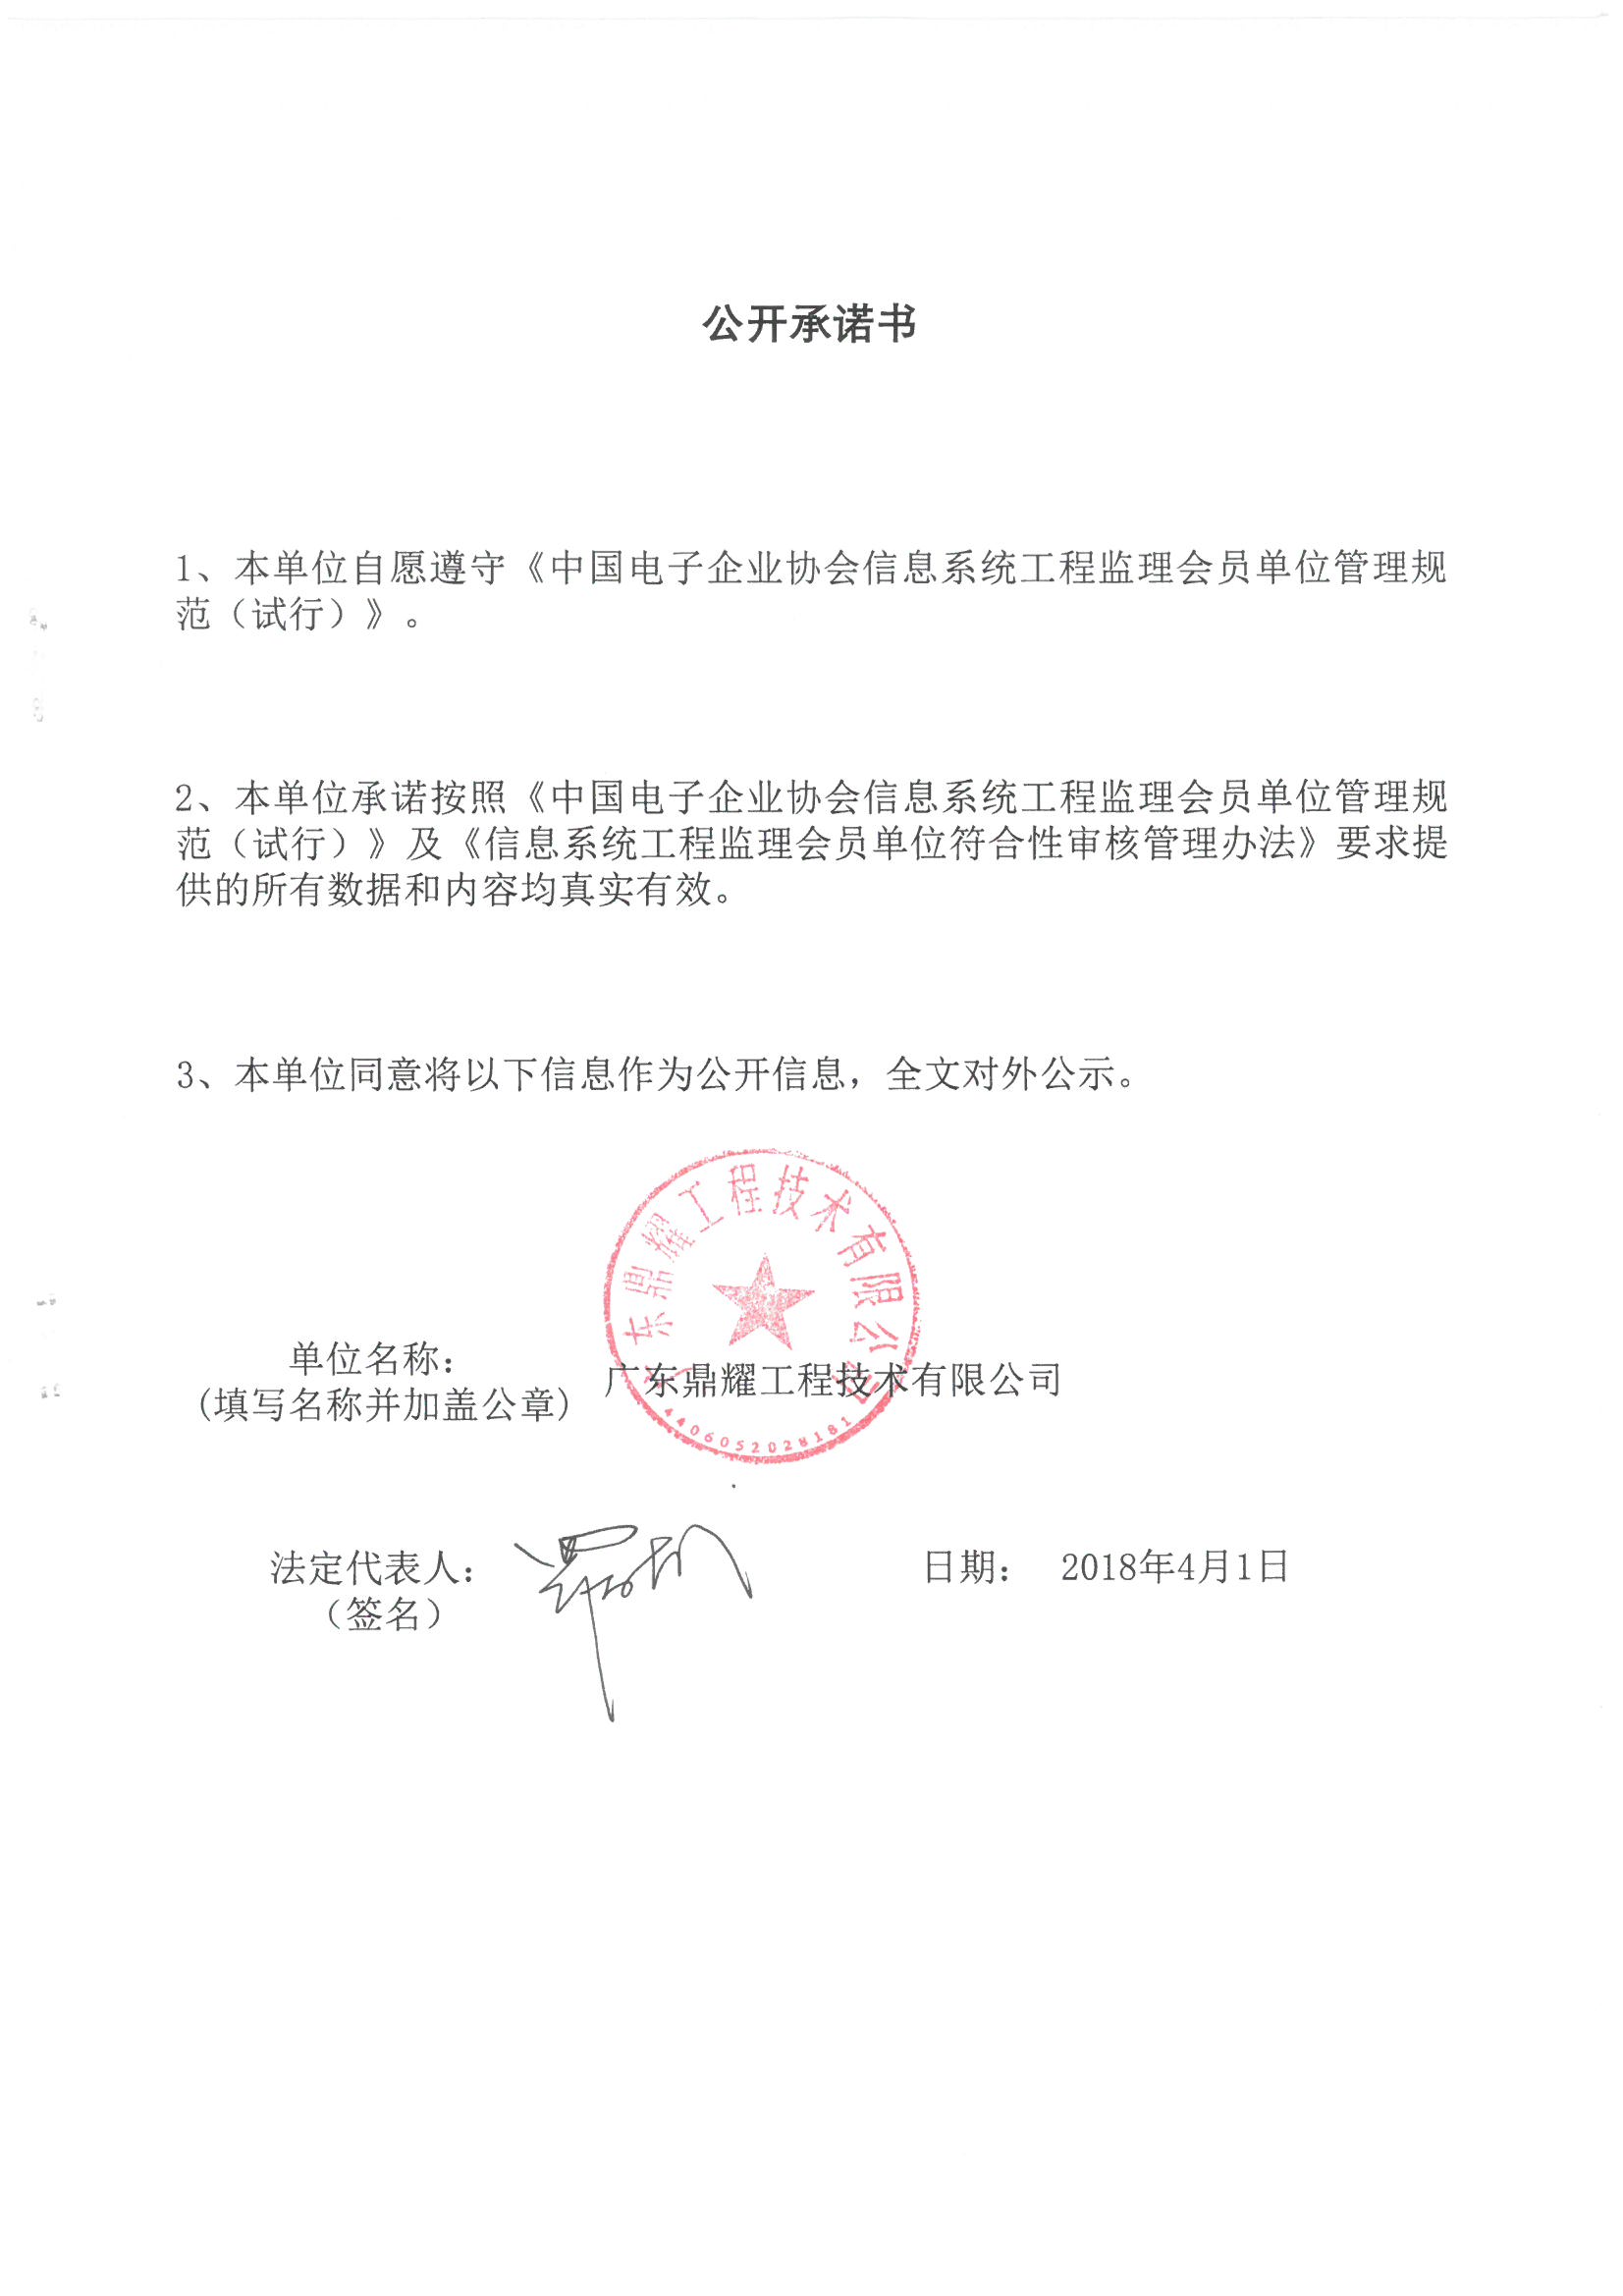 广东鼎耀工程技术有限公司信息系统工程监理资质证书